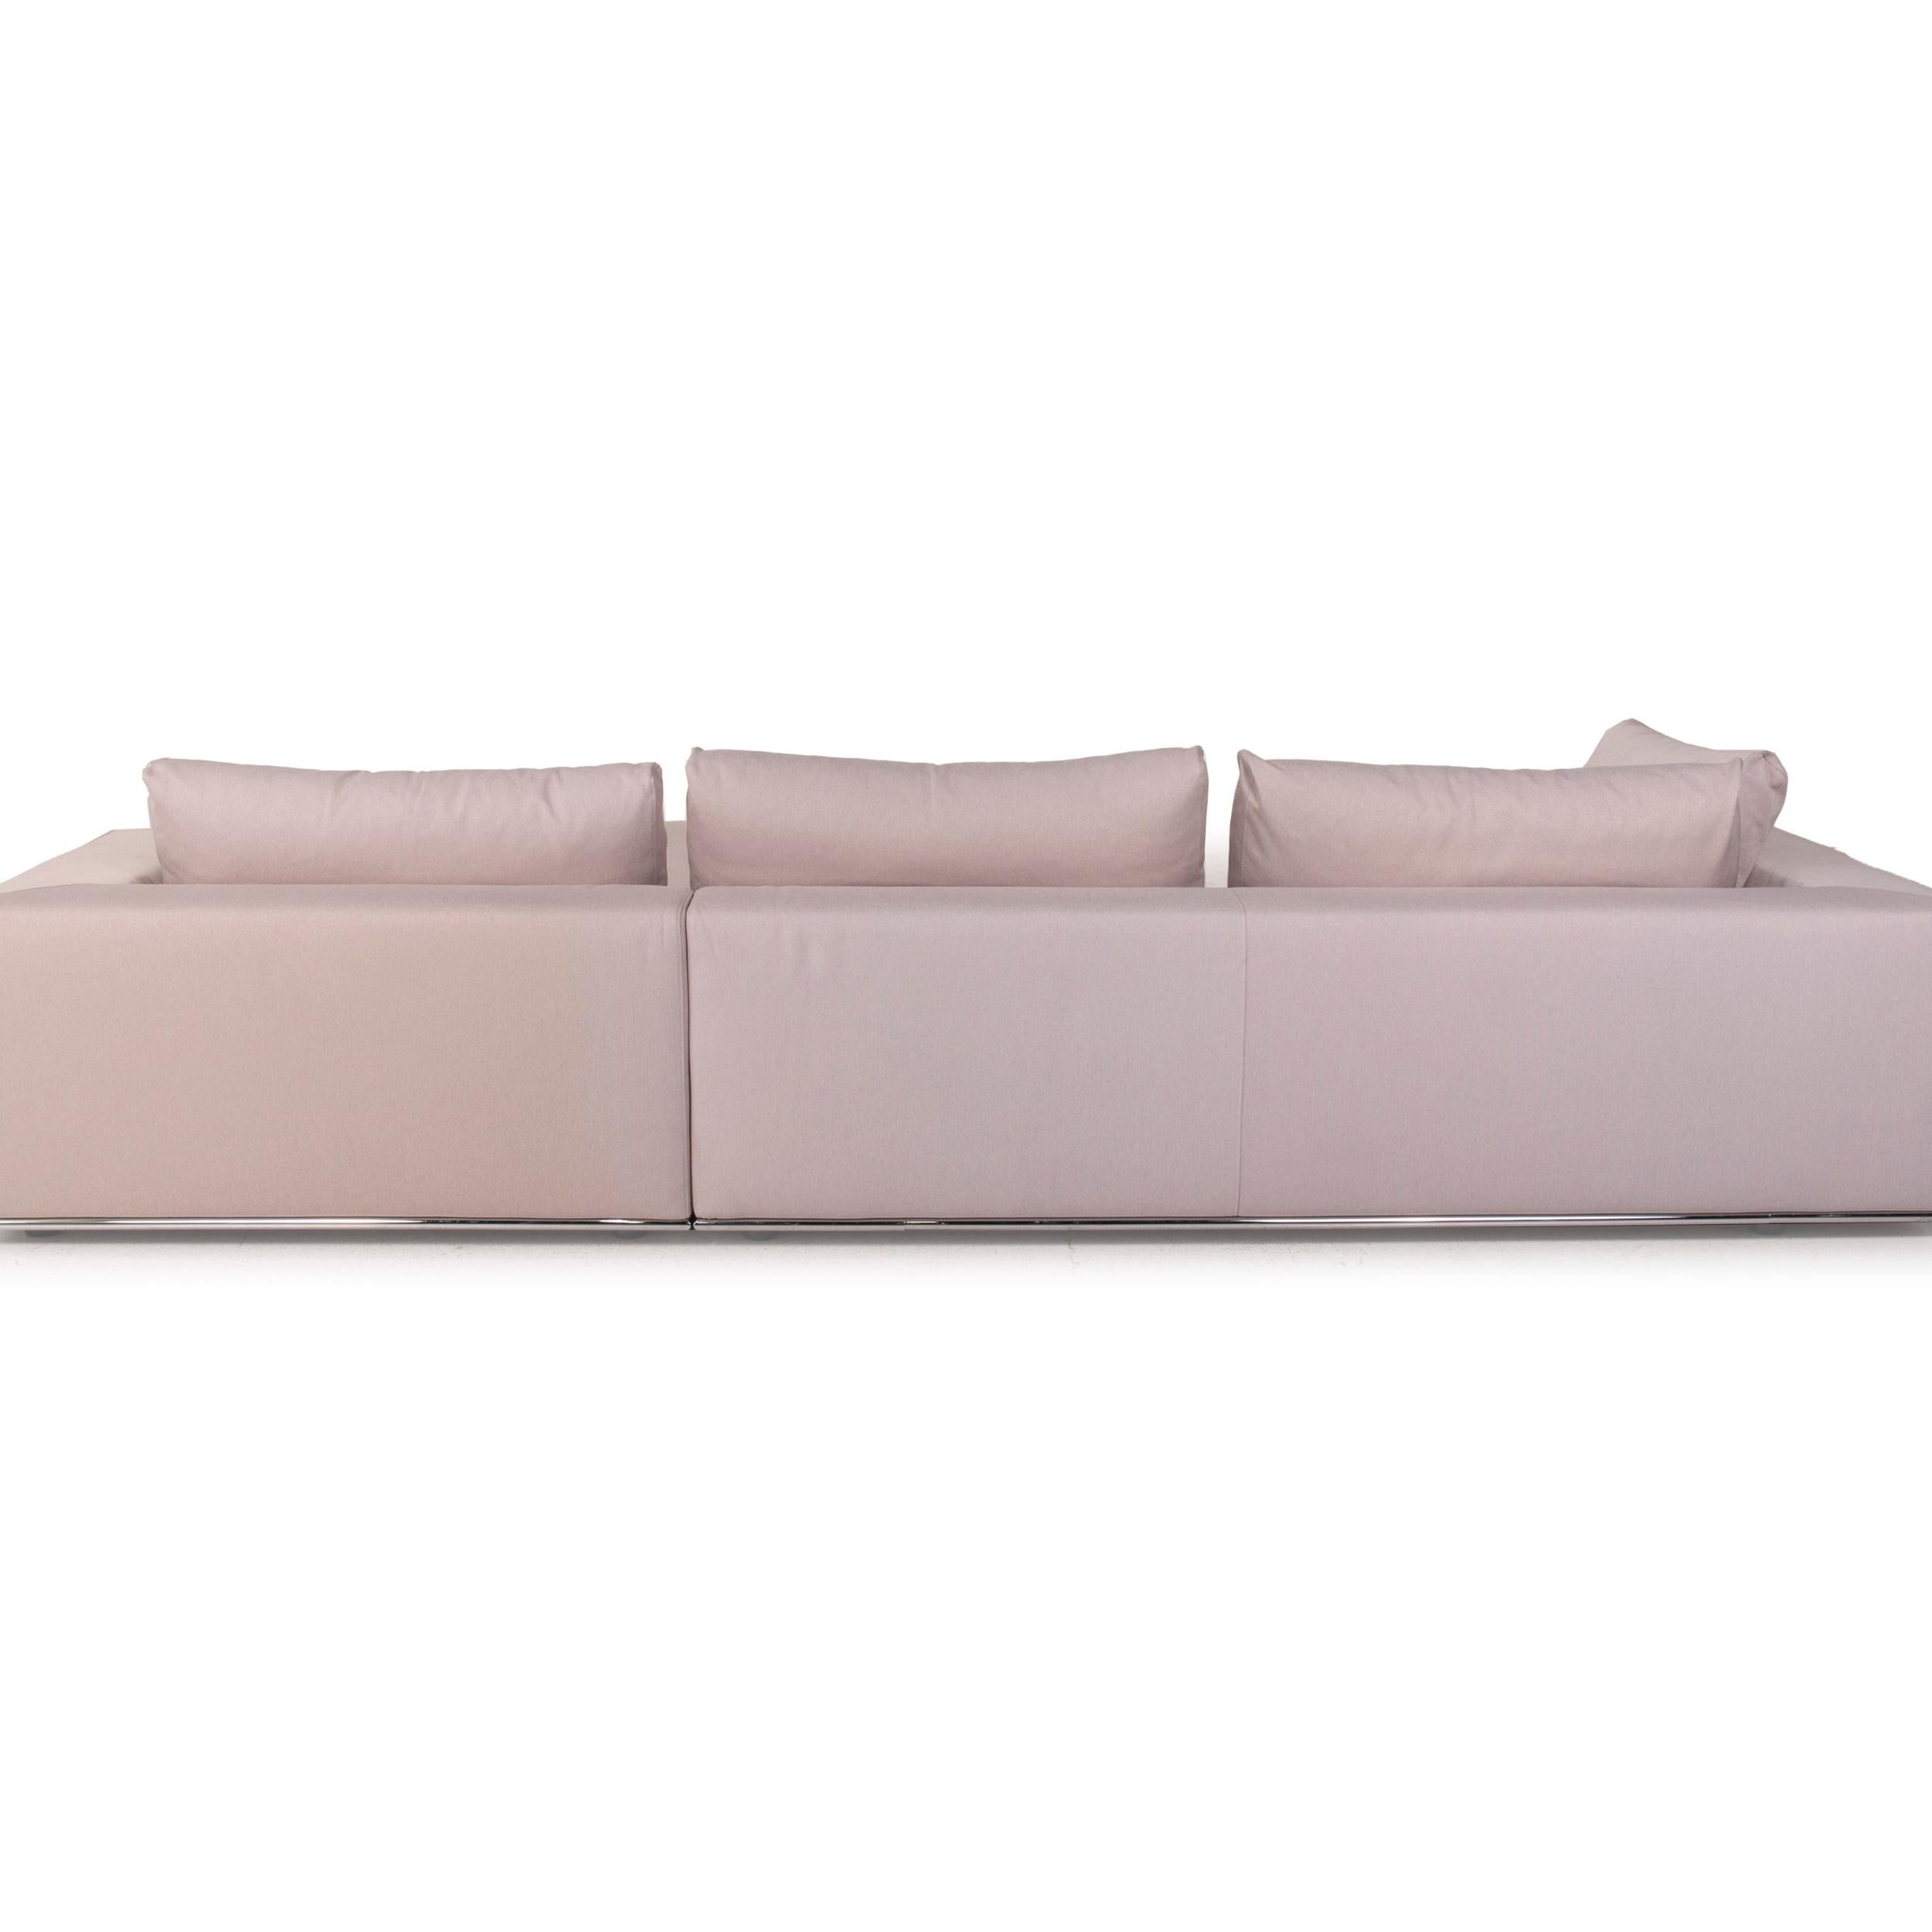 Who's Perfect La Nuova Casa Liverpool Fabric Sofa Beige 3